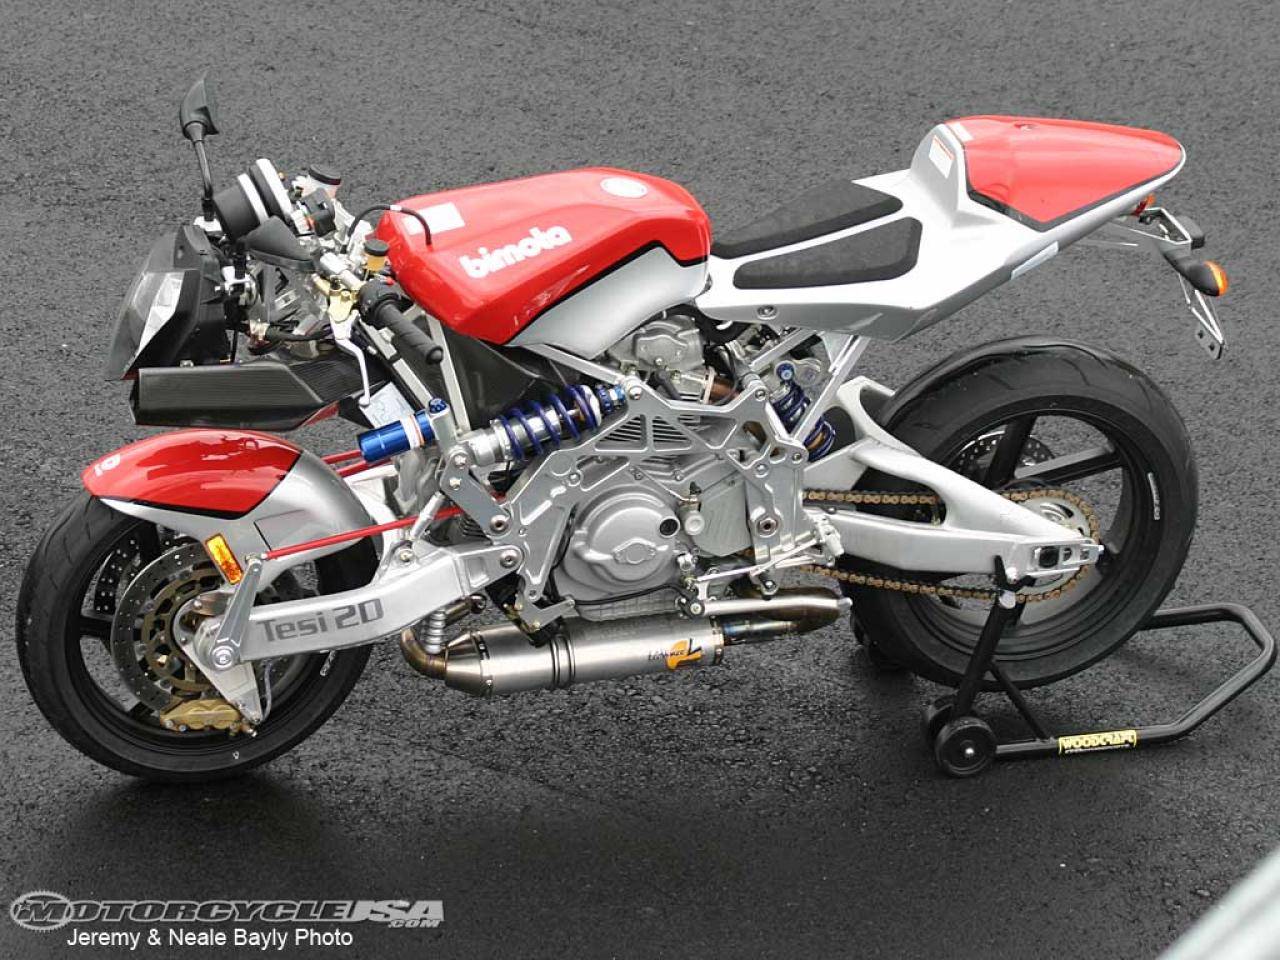 Мотоцикл bimota tesi 3d 2008 фото, характеристики, обзор, сравнение на базамото